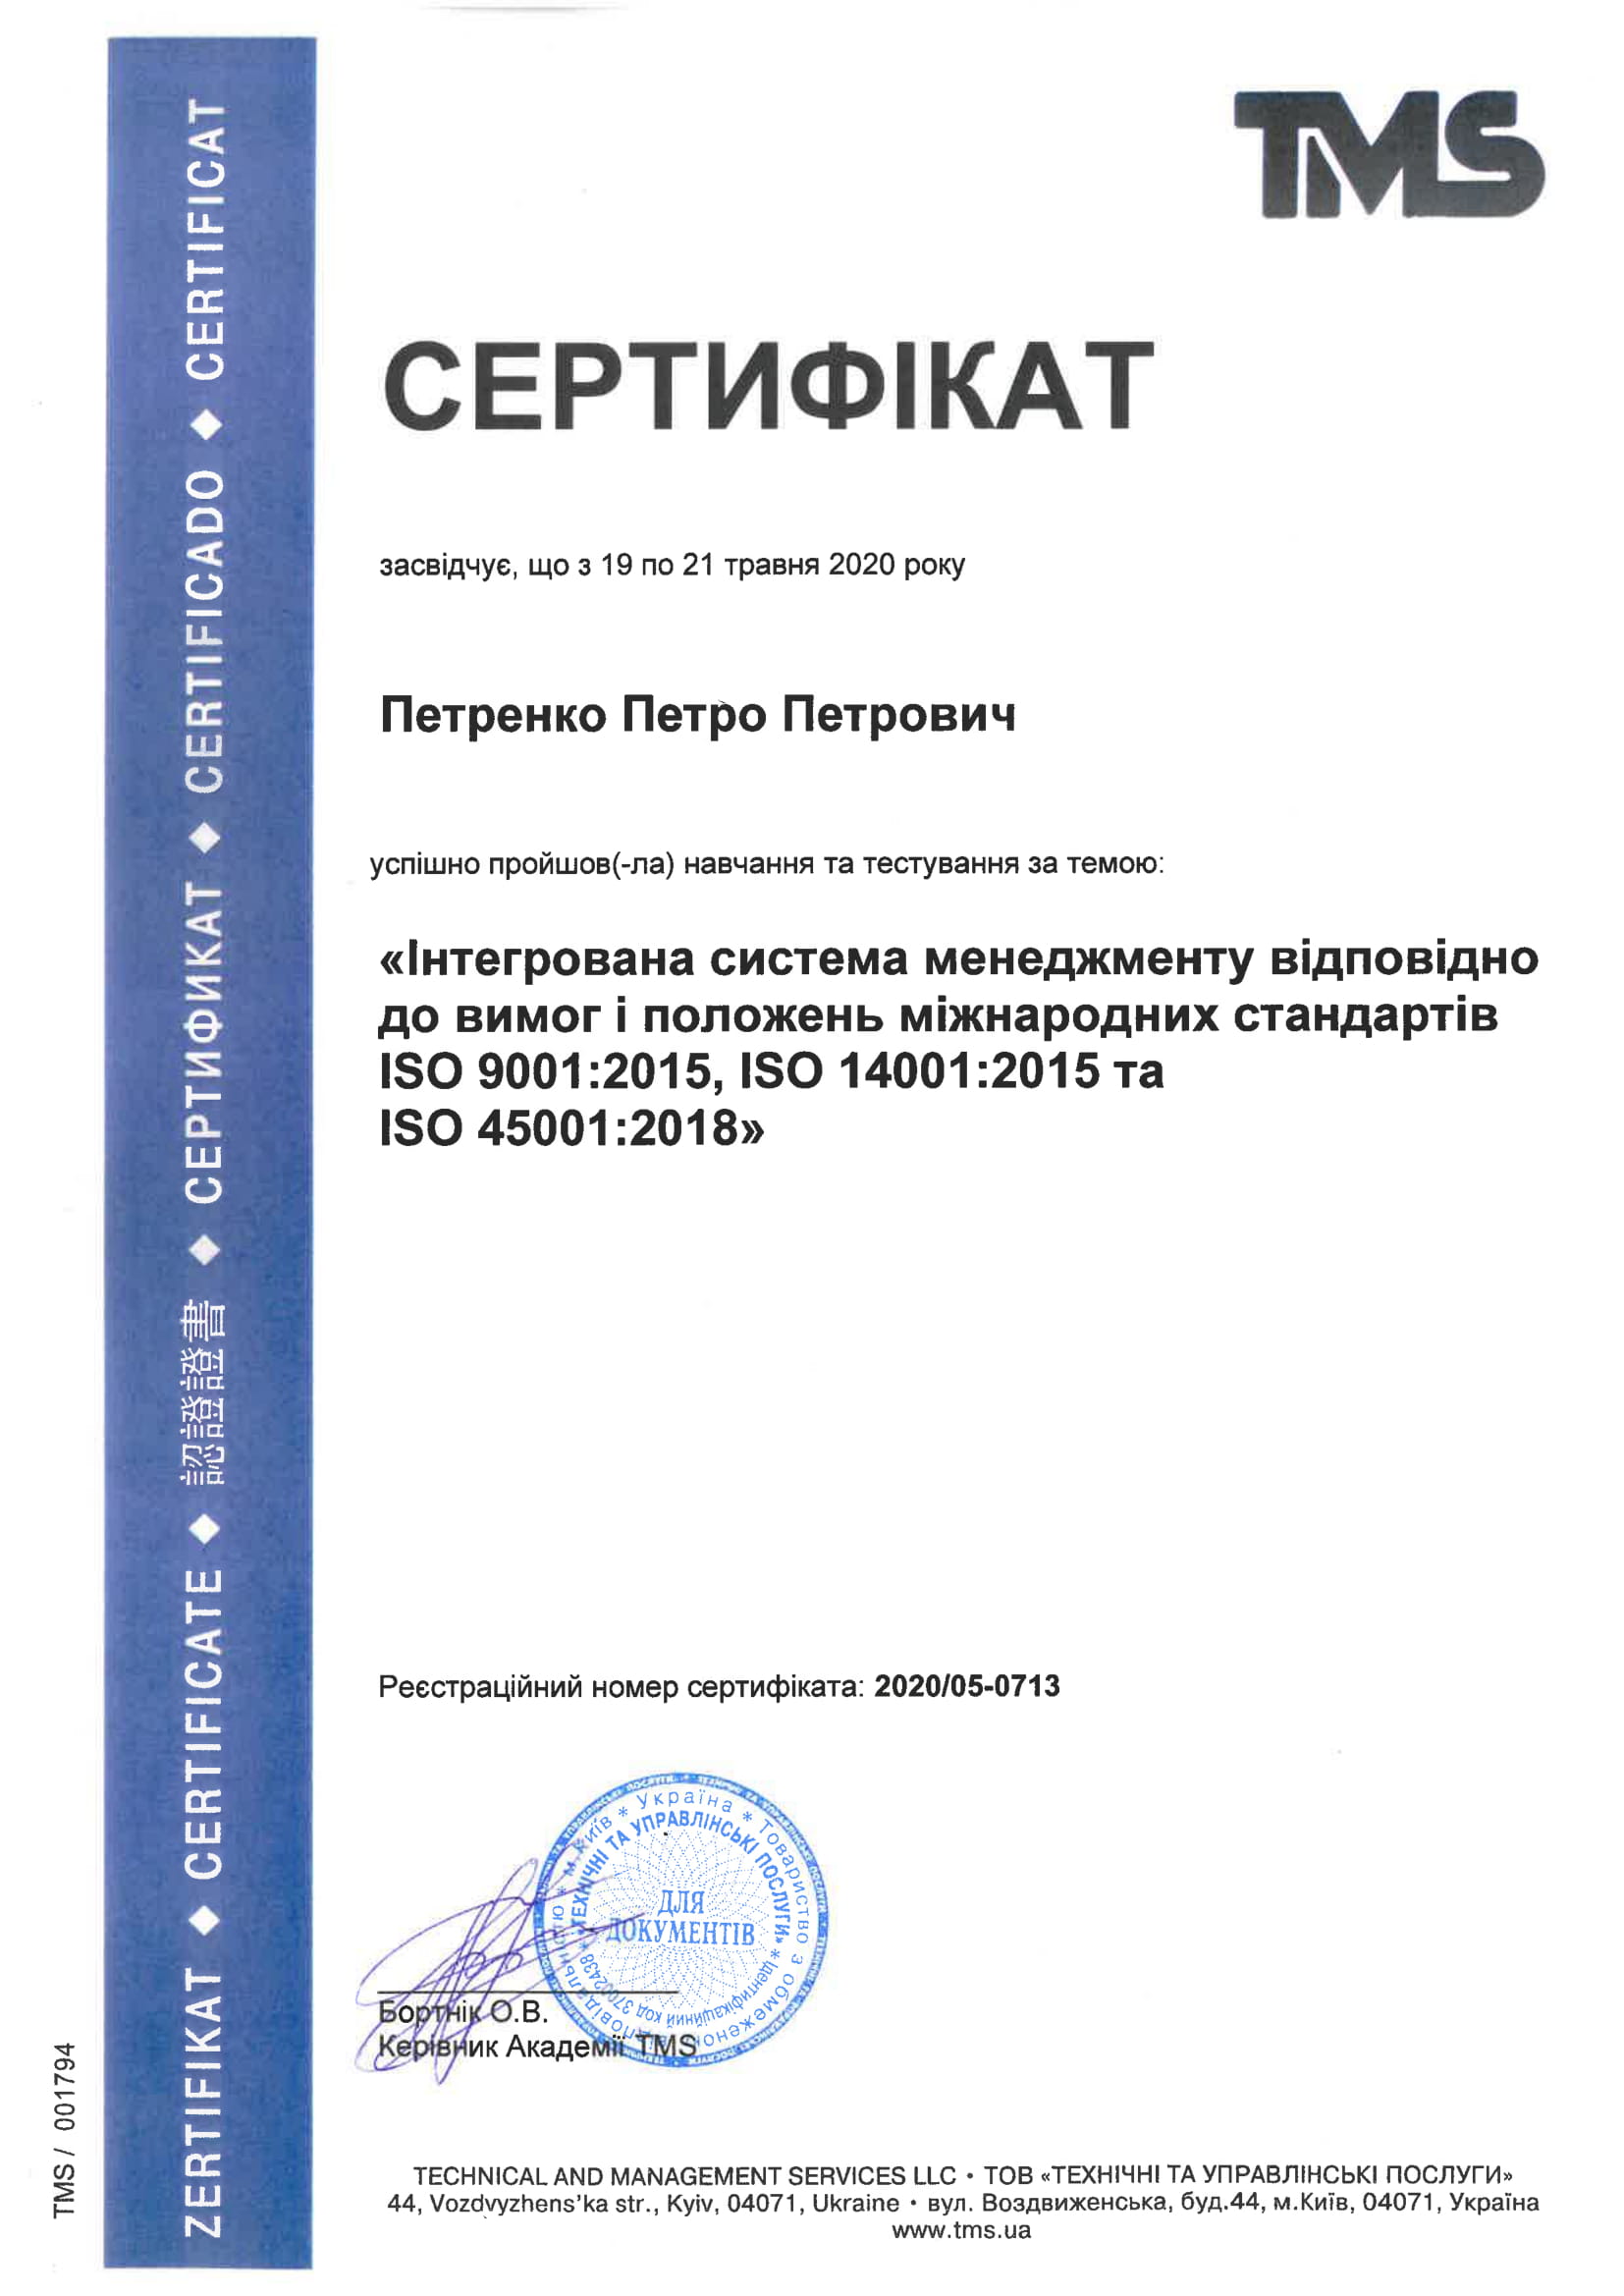 Пример сертификата о прохождении обучения по ISO 9001:2015 ISO 14001:2015 ISO 45001:2018